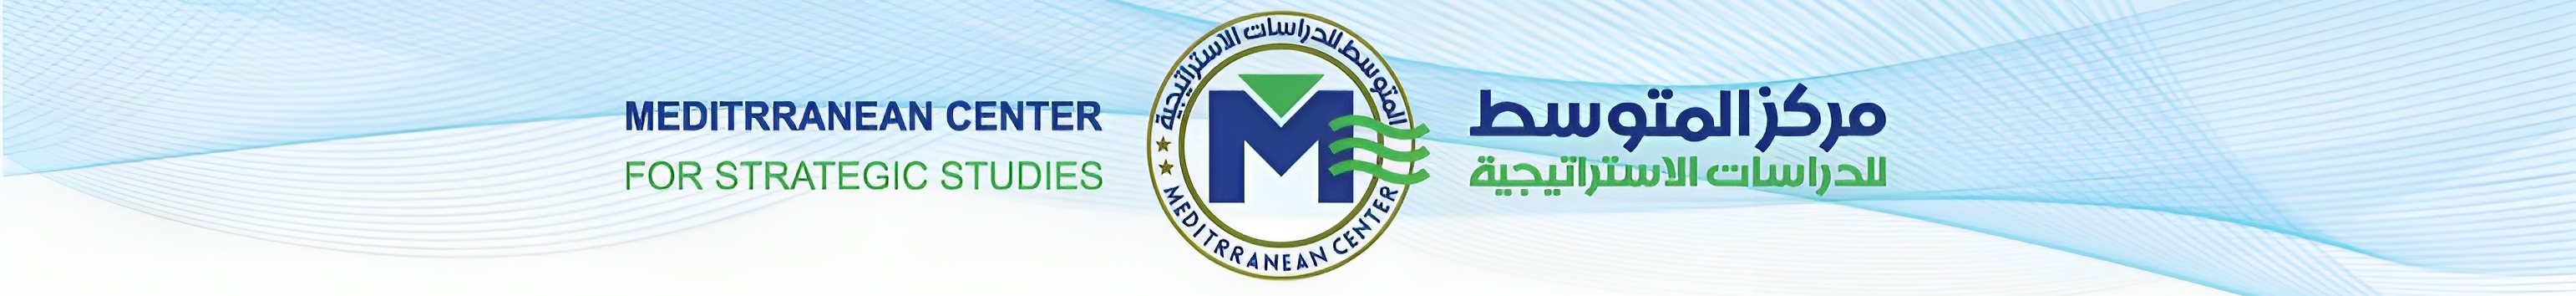 Mediterranean Center